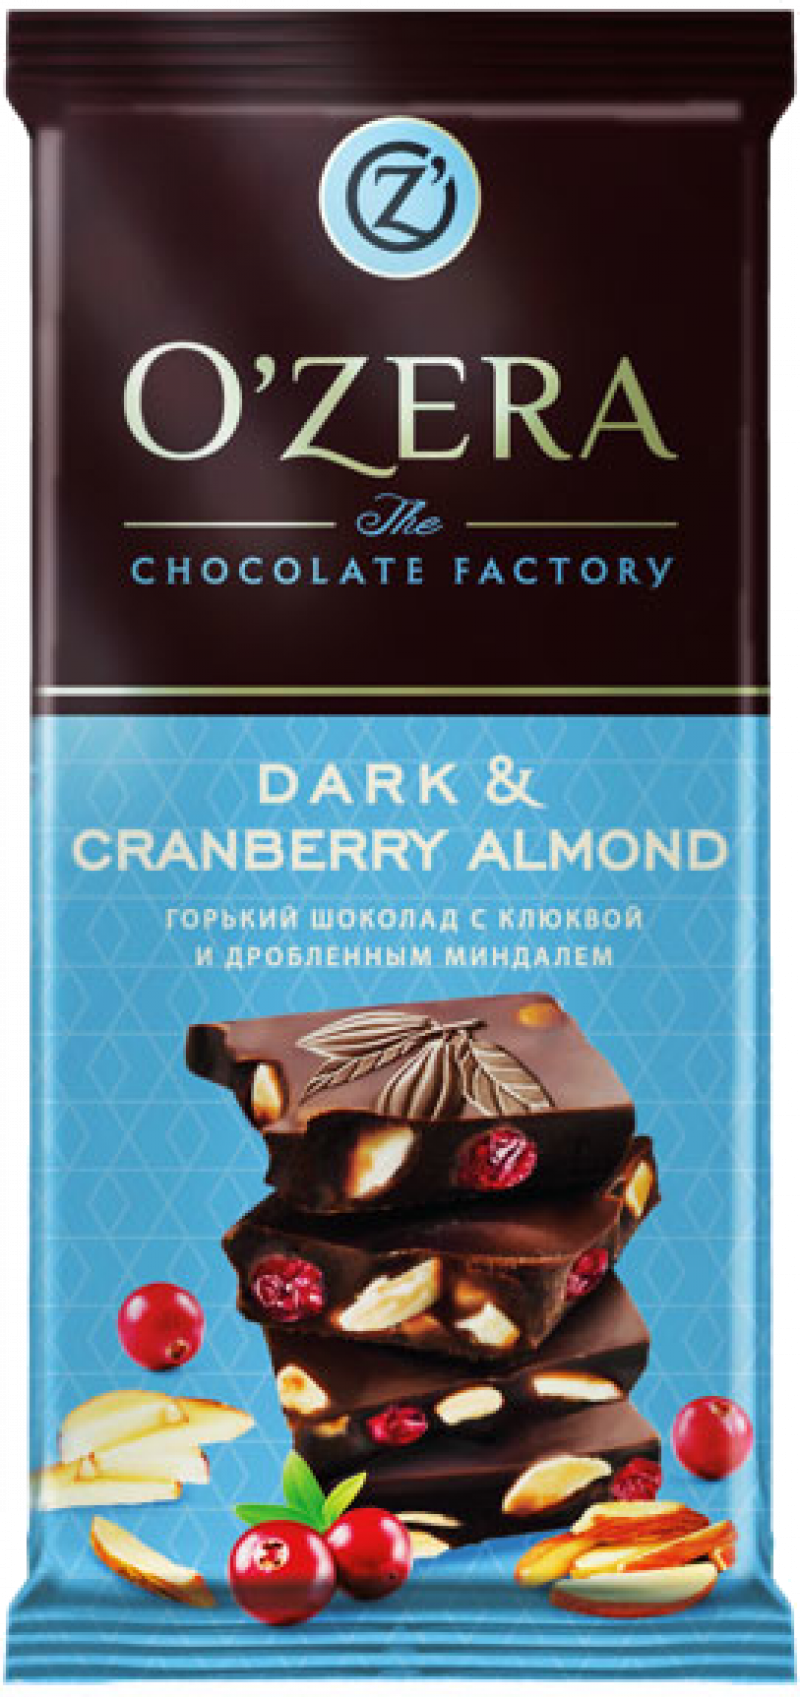 Шоколад ТМ OZera горбкий миндаль клюква Dark Cranberry & Almond 90г